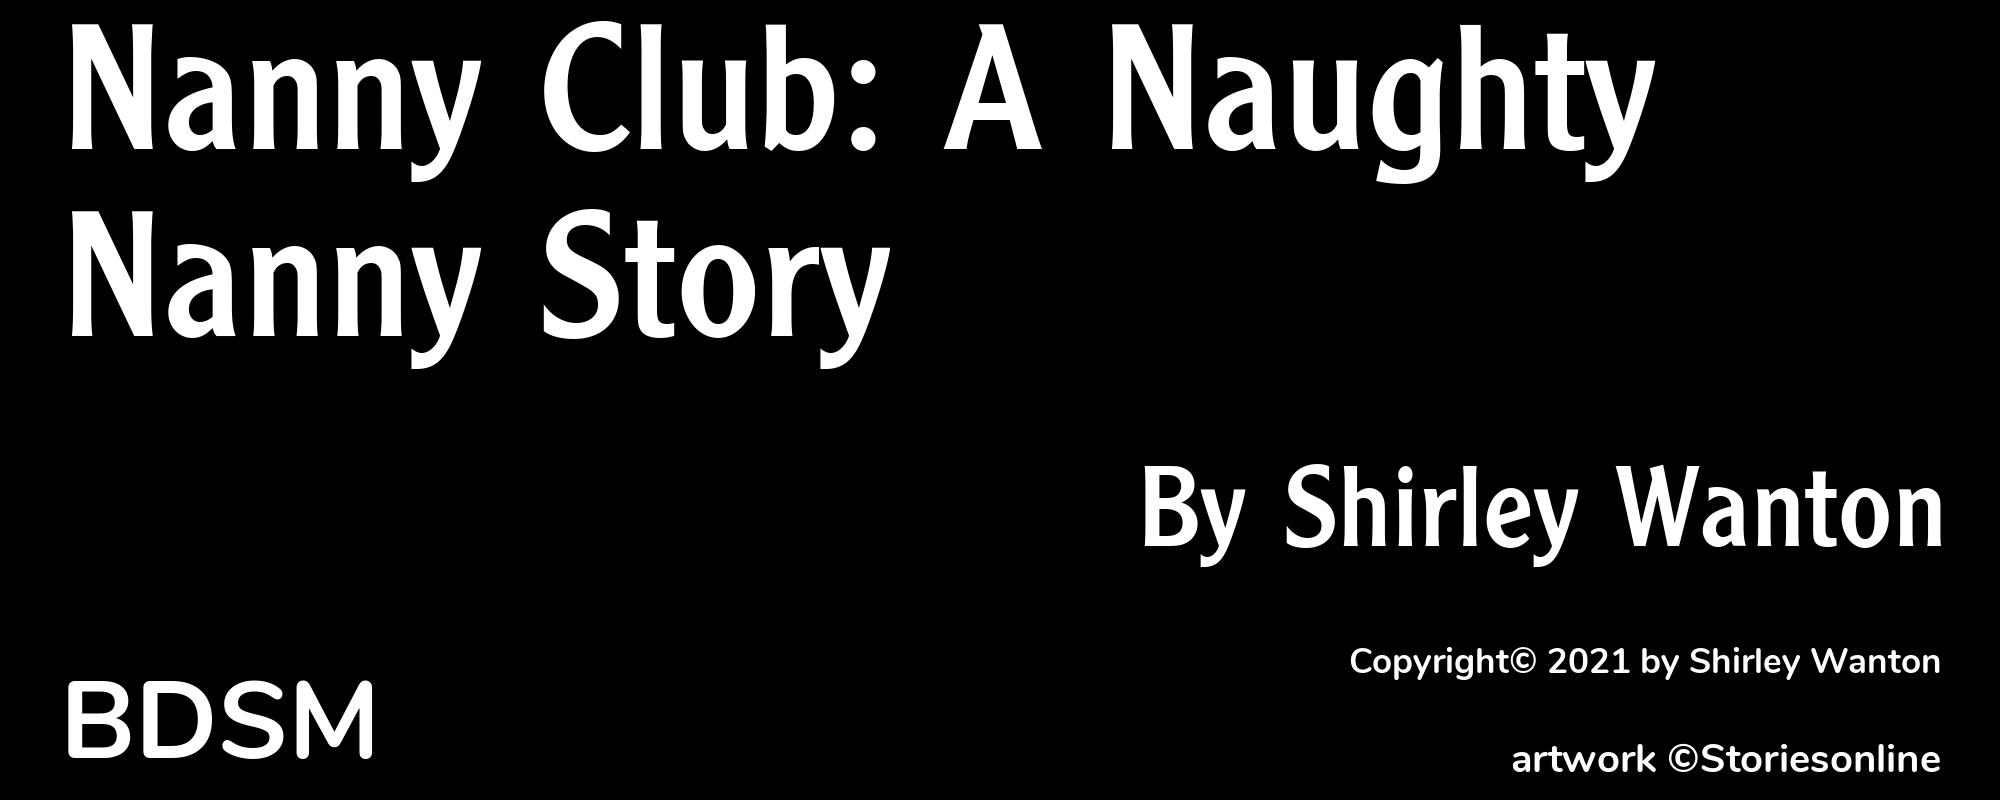 Nanny Club: A Naughty Nanny Story - Cover